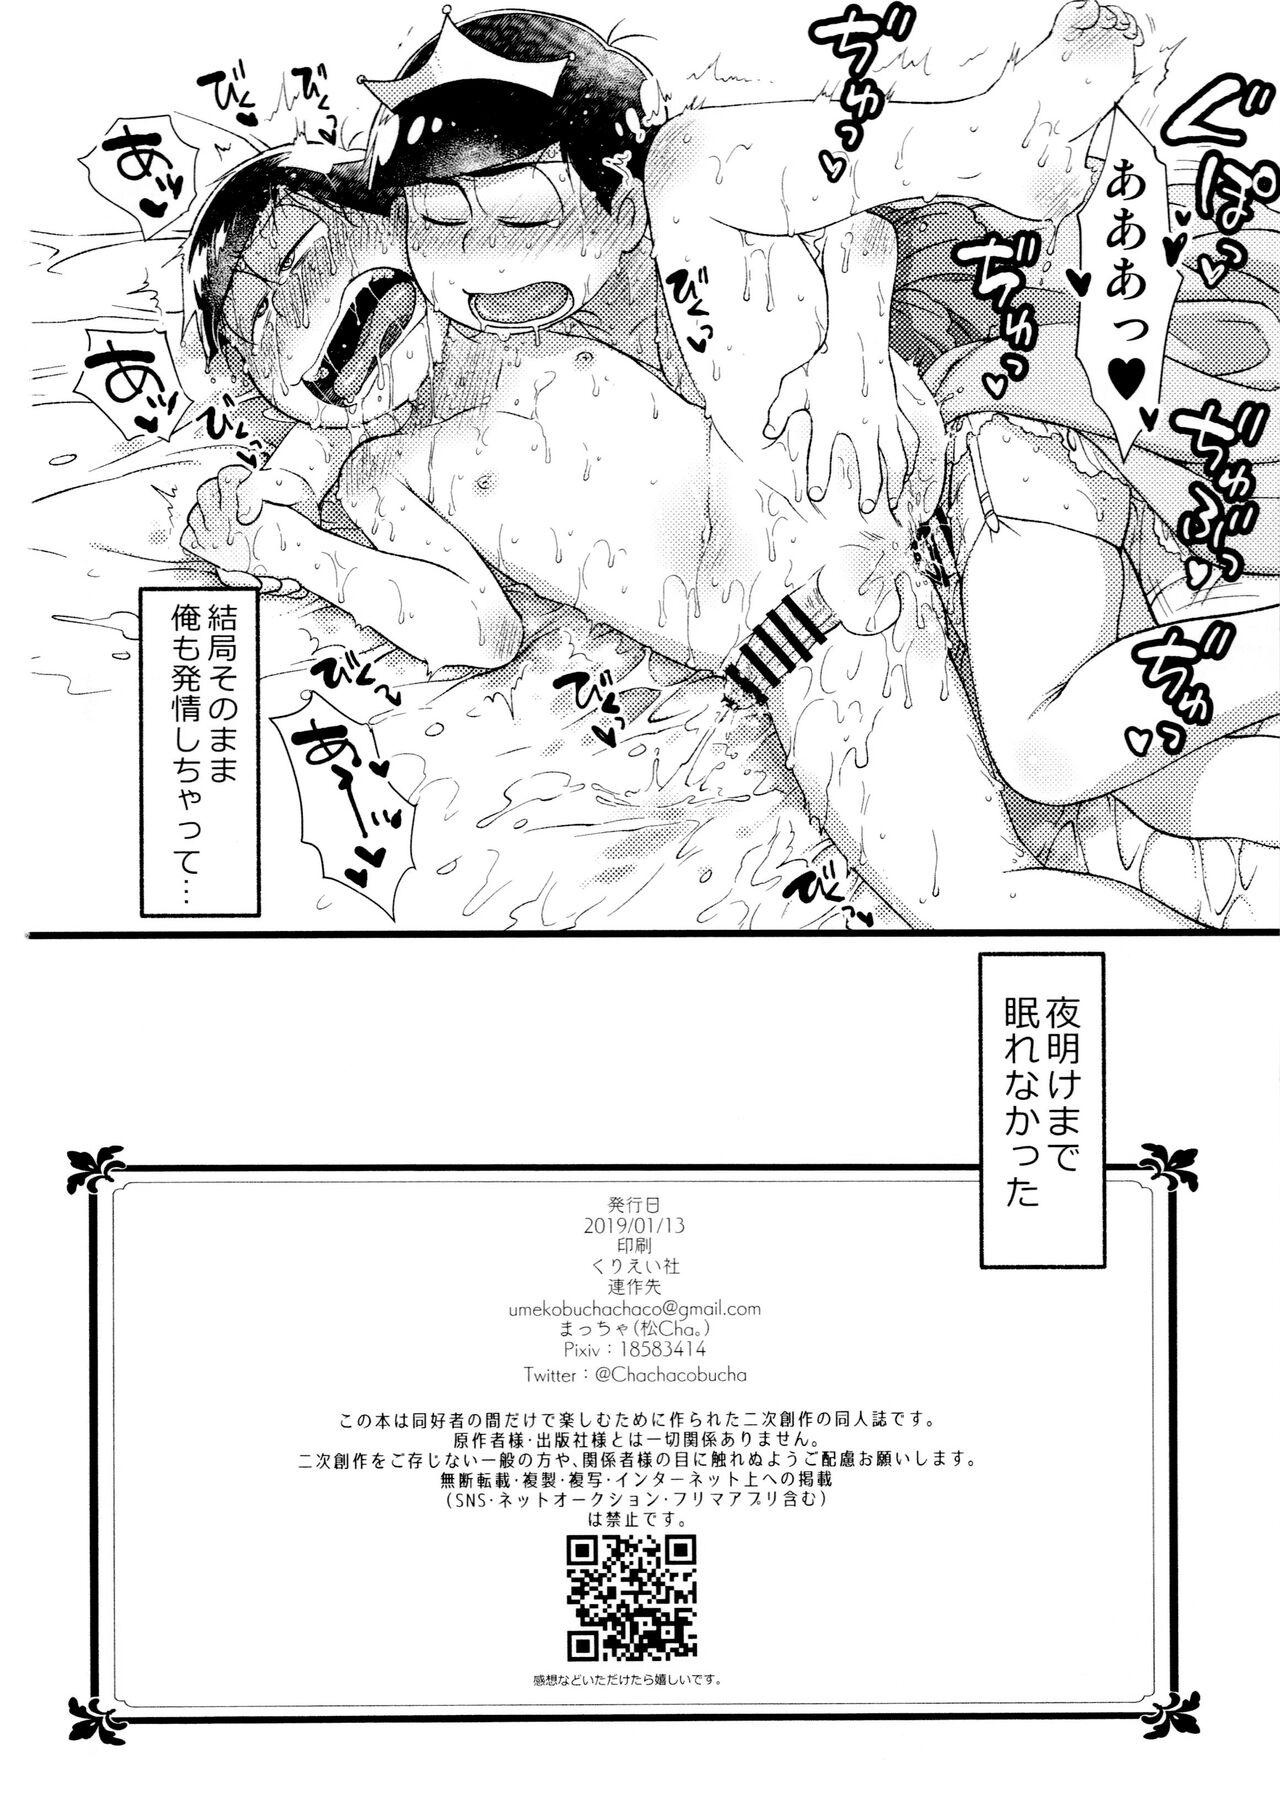 3some Anata to zutto asa kara asamade - Osomatsu san Dominate - Page 17